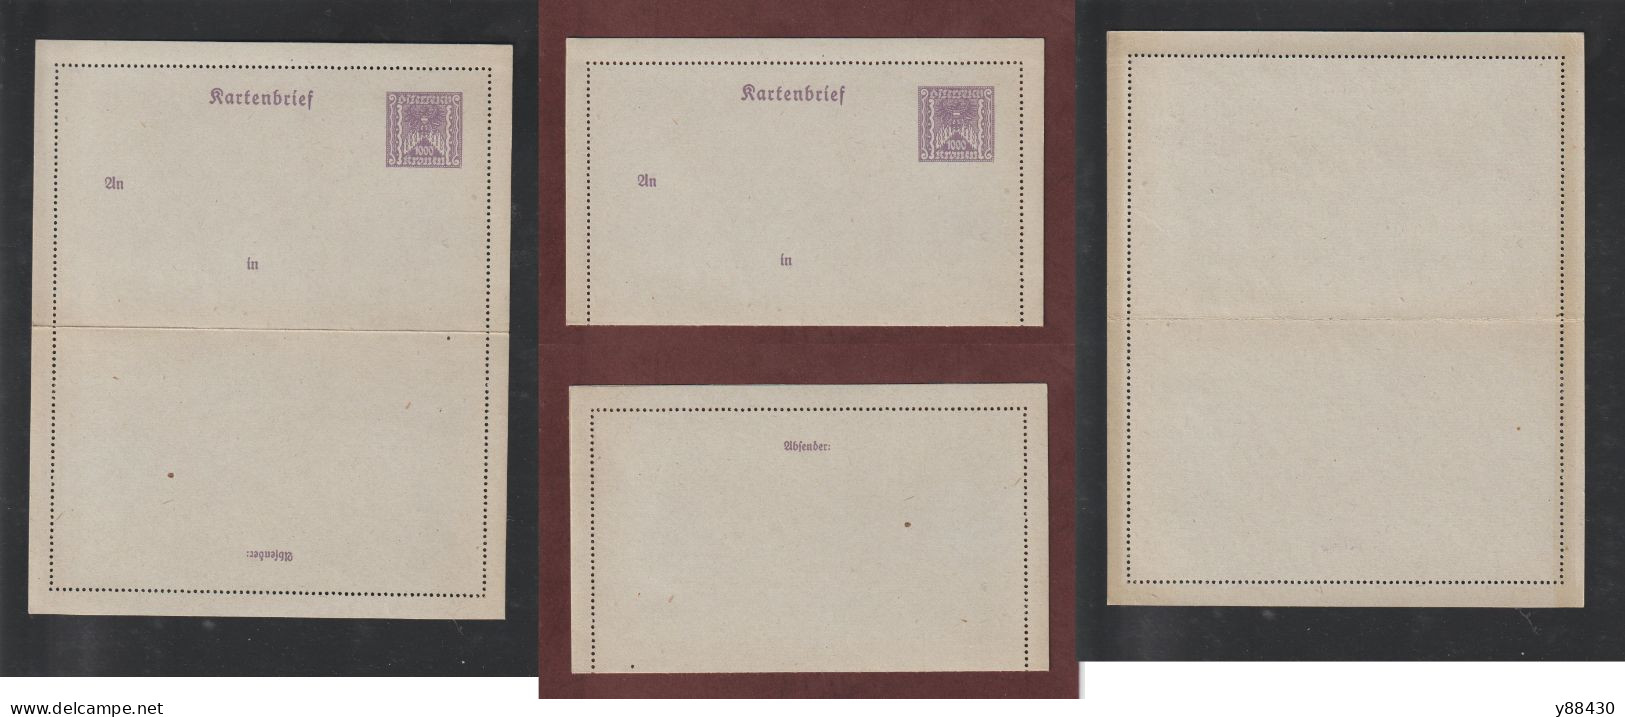 AUTRICHE - Entier Postal Neuf - 1910/1930 - Entier Sur Carte Lettre Gommé  - 1000k. Violet  - 5 Scan - Carte-Lettere